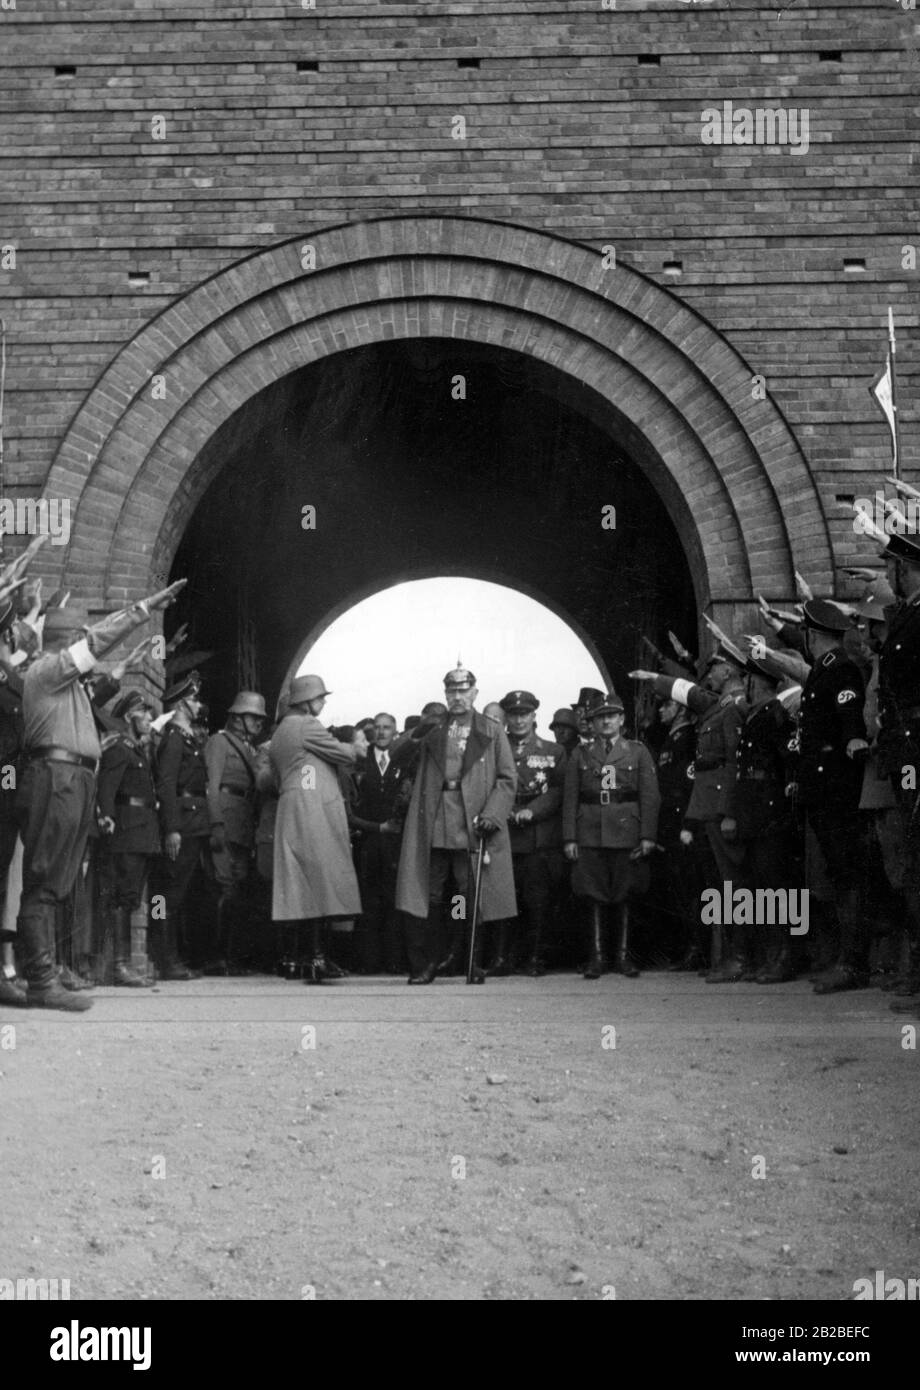 Hindenburgs bei einem Besuch der Gedenkstätte für die Schlacht bei Tannenberg bei Hohenstein in Ostpreussen. Franz von Papen wird hinter sich gelassen. Rechts neben Hermann Göring und Gauleiter Erich Koch. Am Rande stehen SA- und SS-Mitglieder, rechts ein SD-Mitglied mit Armband. Stockfoto